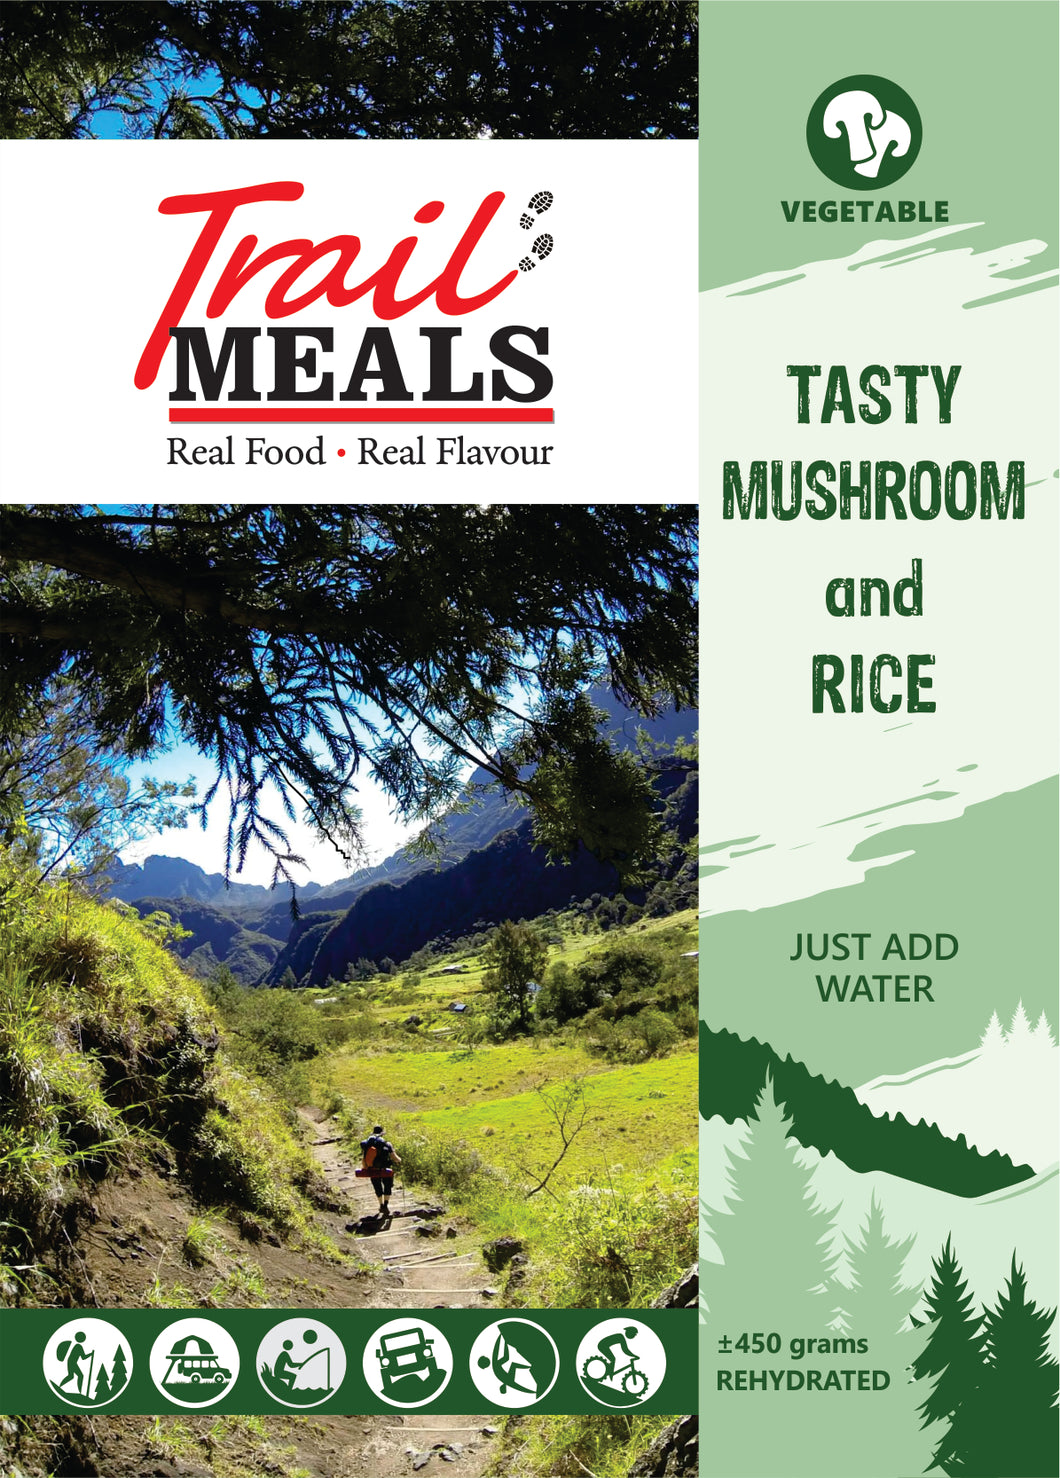 Tasty Mushroom and Rice TrailMeal